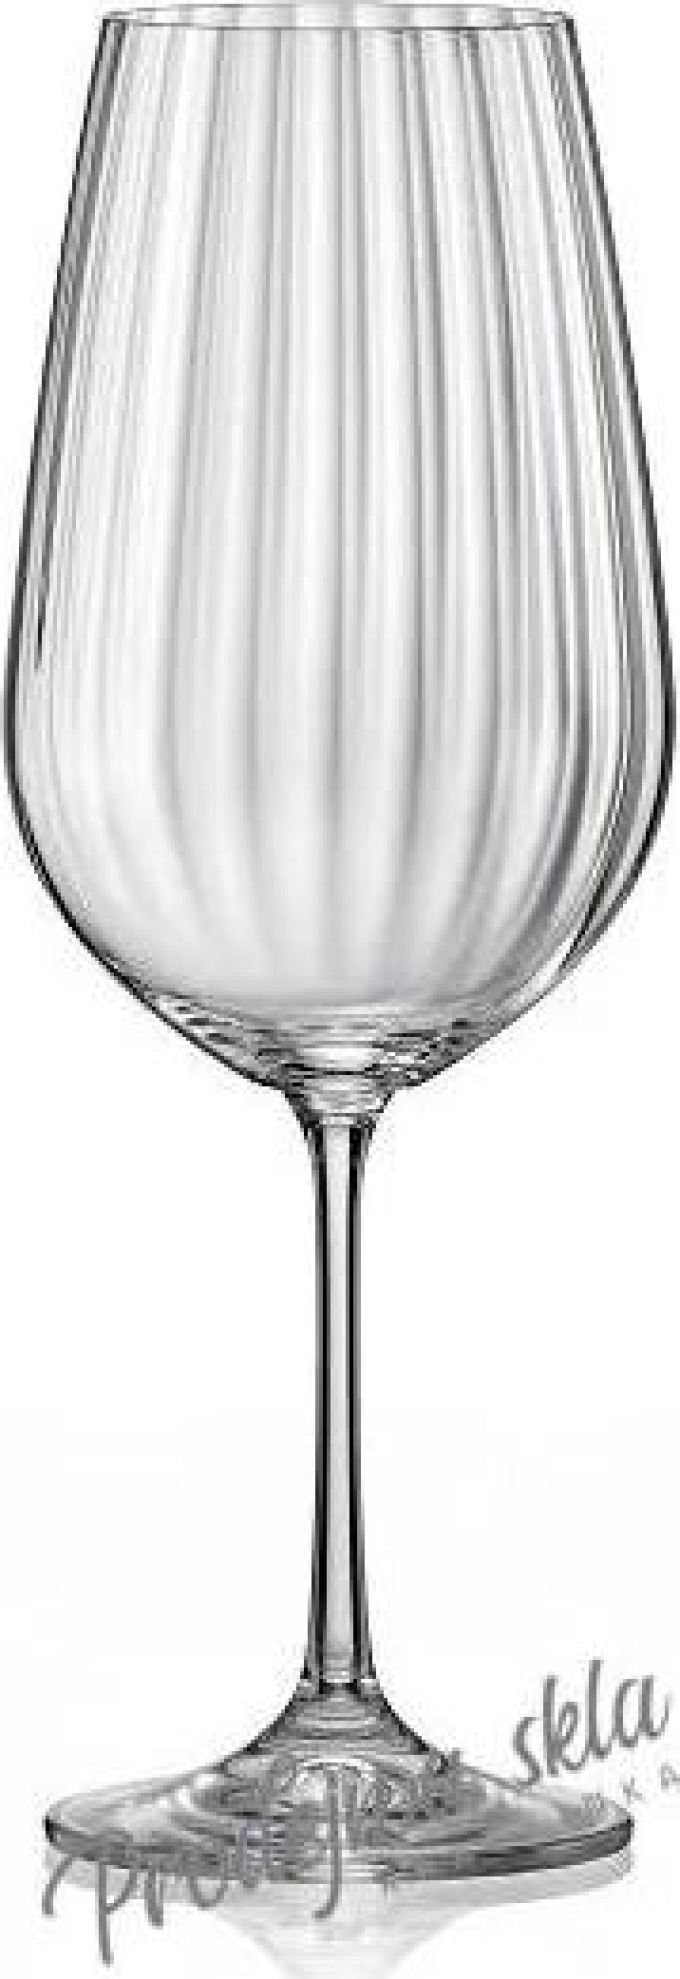 Crystalex - Bohemia Crystal Sklenice na bílé i červené víno Viola Waterfall 350 ml, 6 ks